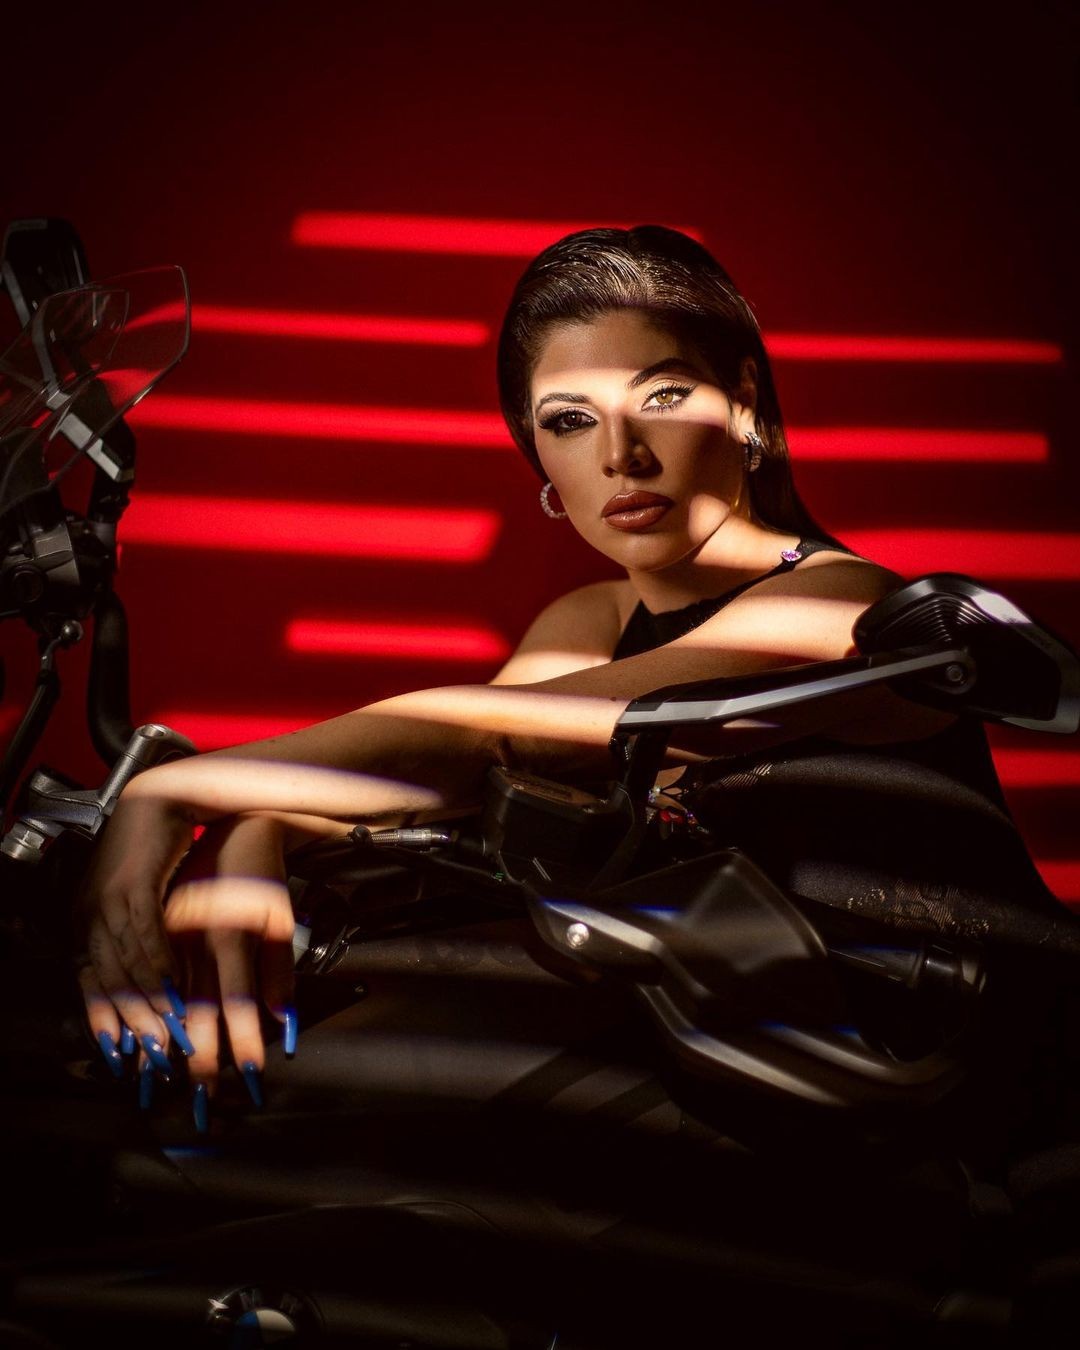 Gkay posou para fotos sensuais em moto (Foto: Reprodução/Instagram)